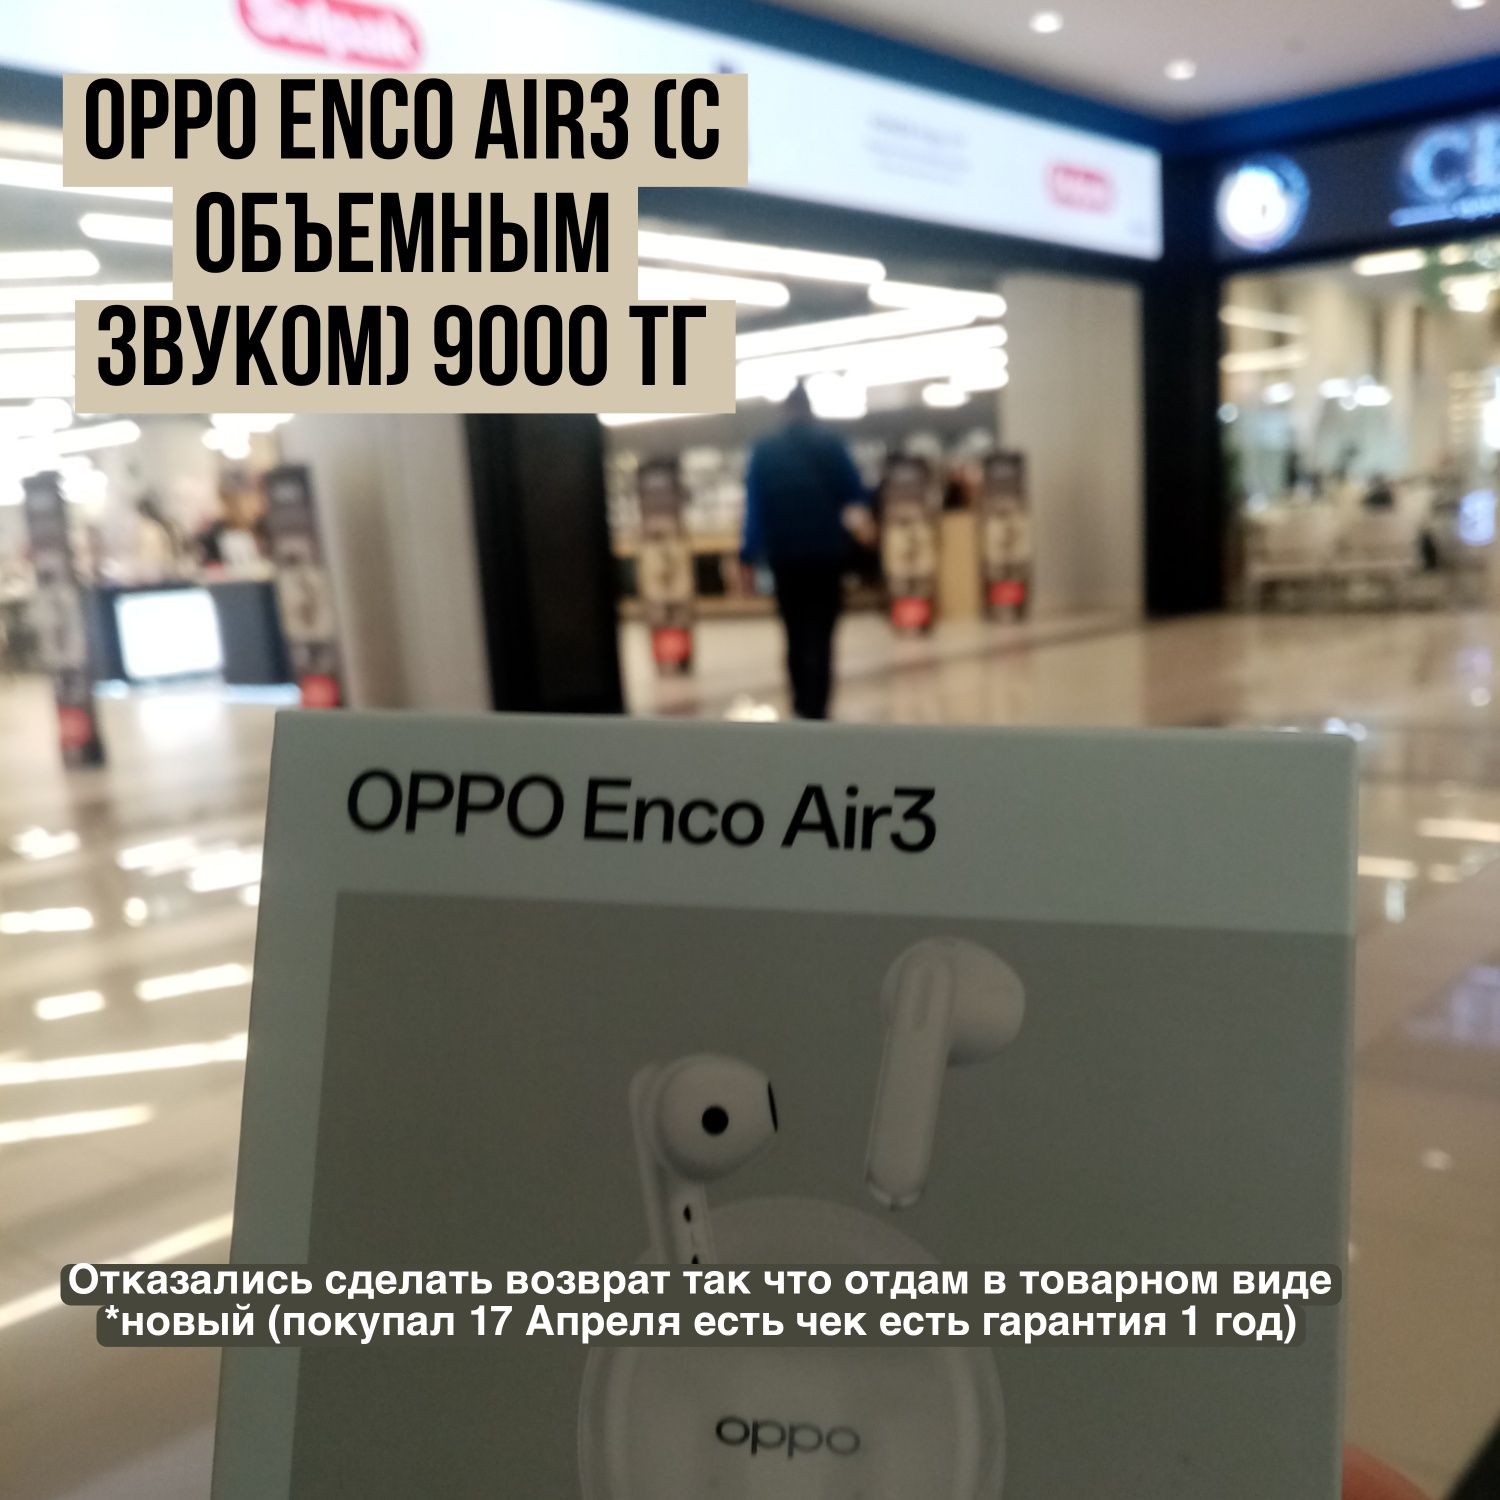 Oppo enco air3 новый (имеется товарный вид)